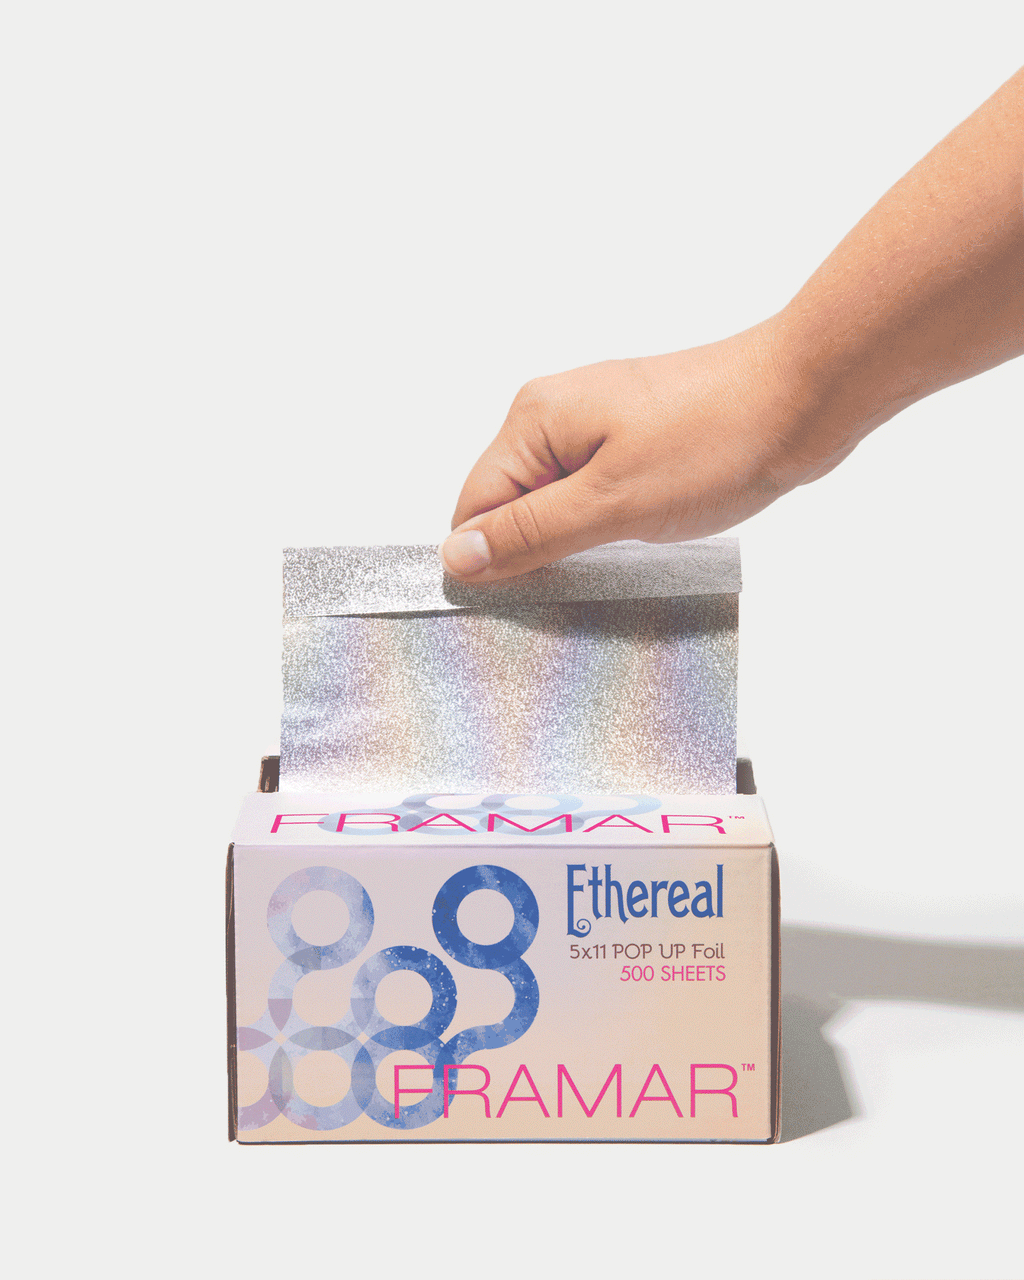 Framar Ethereal - Pop Up